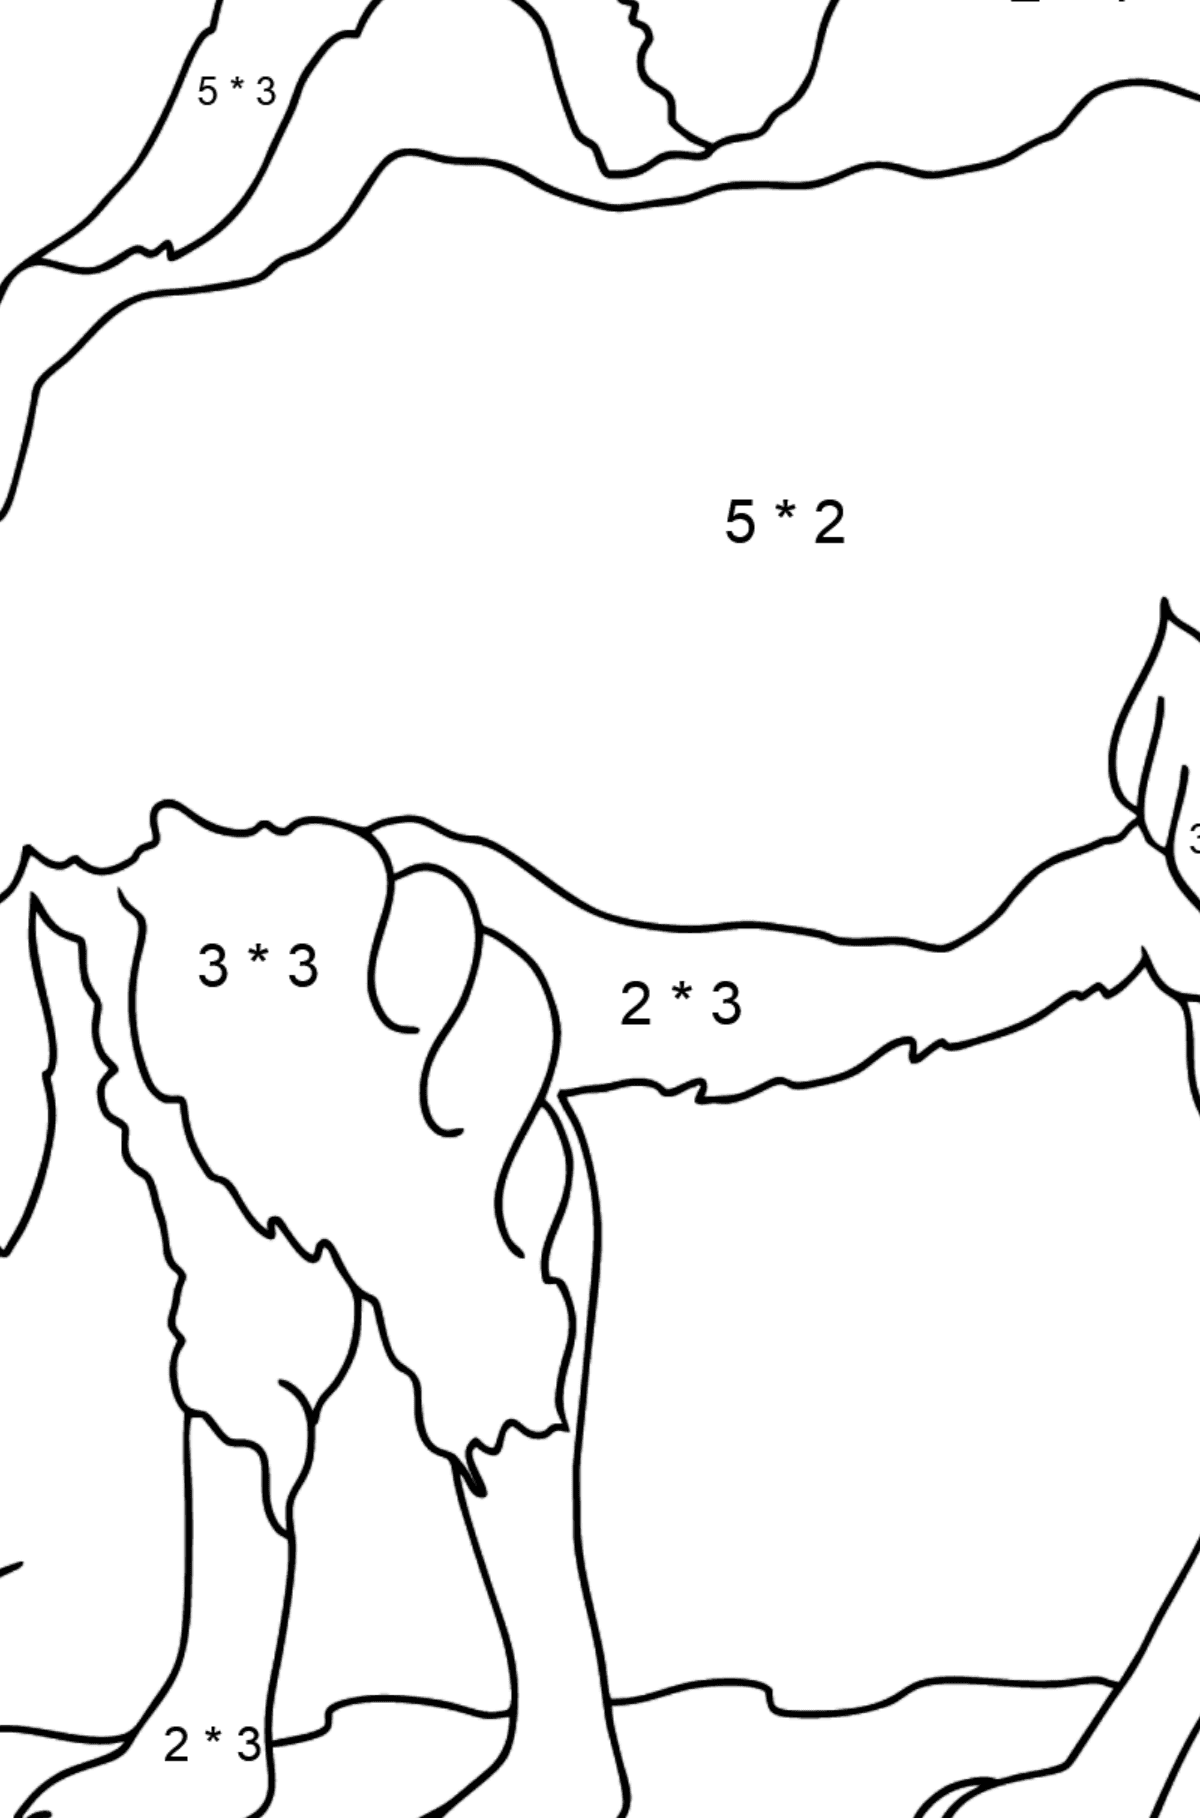 Dibujo para Colorear - Un Camello en el Desierto - Colorear con Matemáticas - Multiplicaciones para Niños